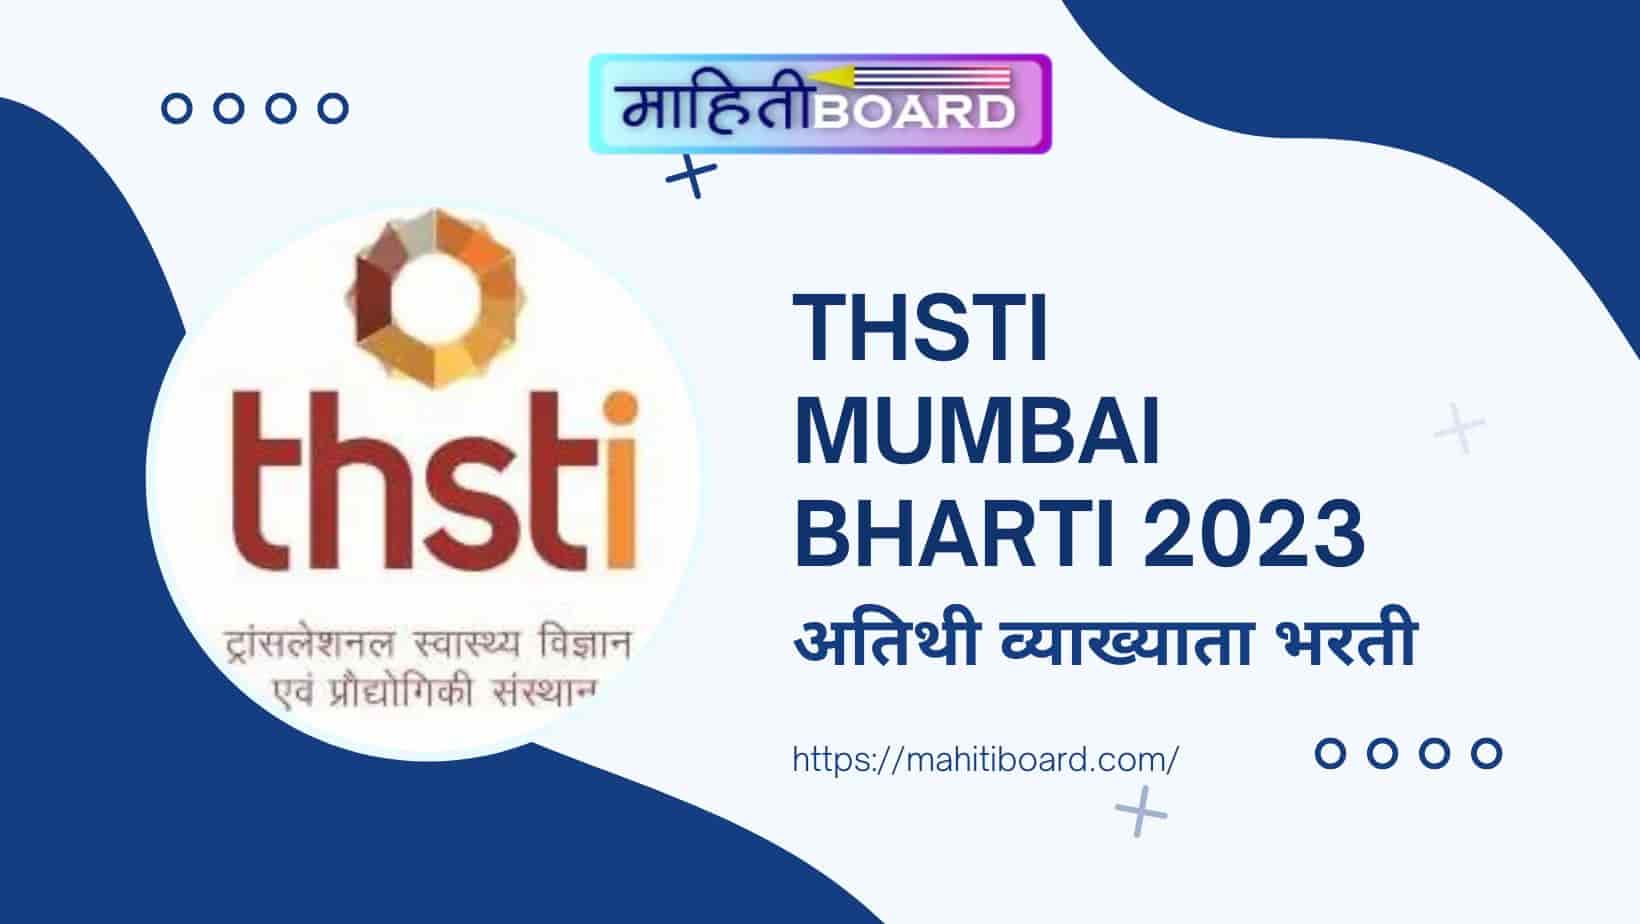 THSTI Mumbai Bharti 2023